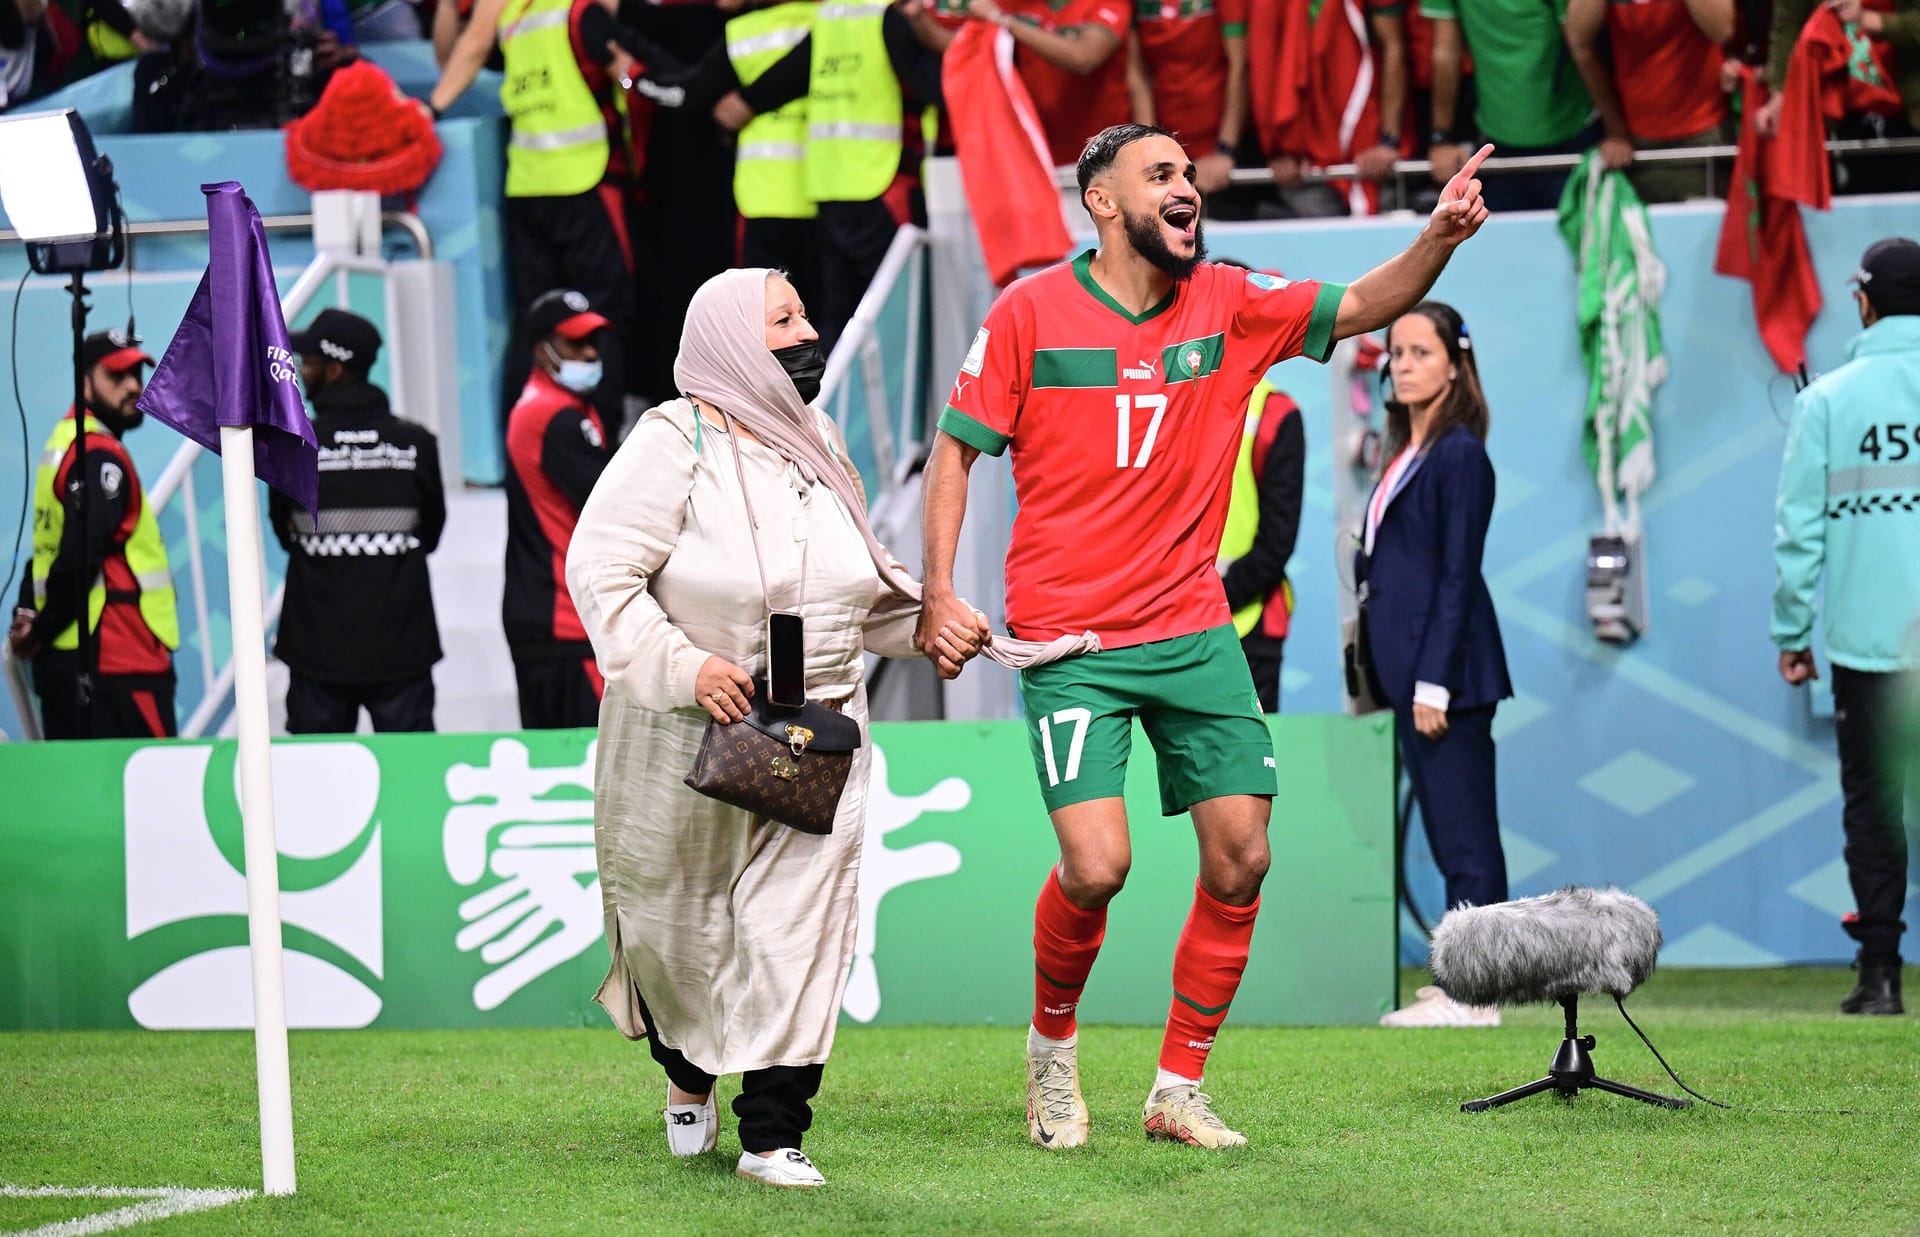 Dank eines hart erkämpften 1:0-Siegs gegen Portugal zog Marokko als erste afrikanische Mannschaft überhaupt ins Halbfinale der Fußball-Weltmeisterschaft ein. Den größten Erfolg ihrer Karriere feierten Marokkos Helden um Soufiane Boufal (re.) mit Tanzeinlagen zusammen mit ihren Müttern auf dem Spielfeld.